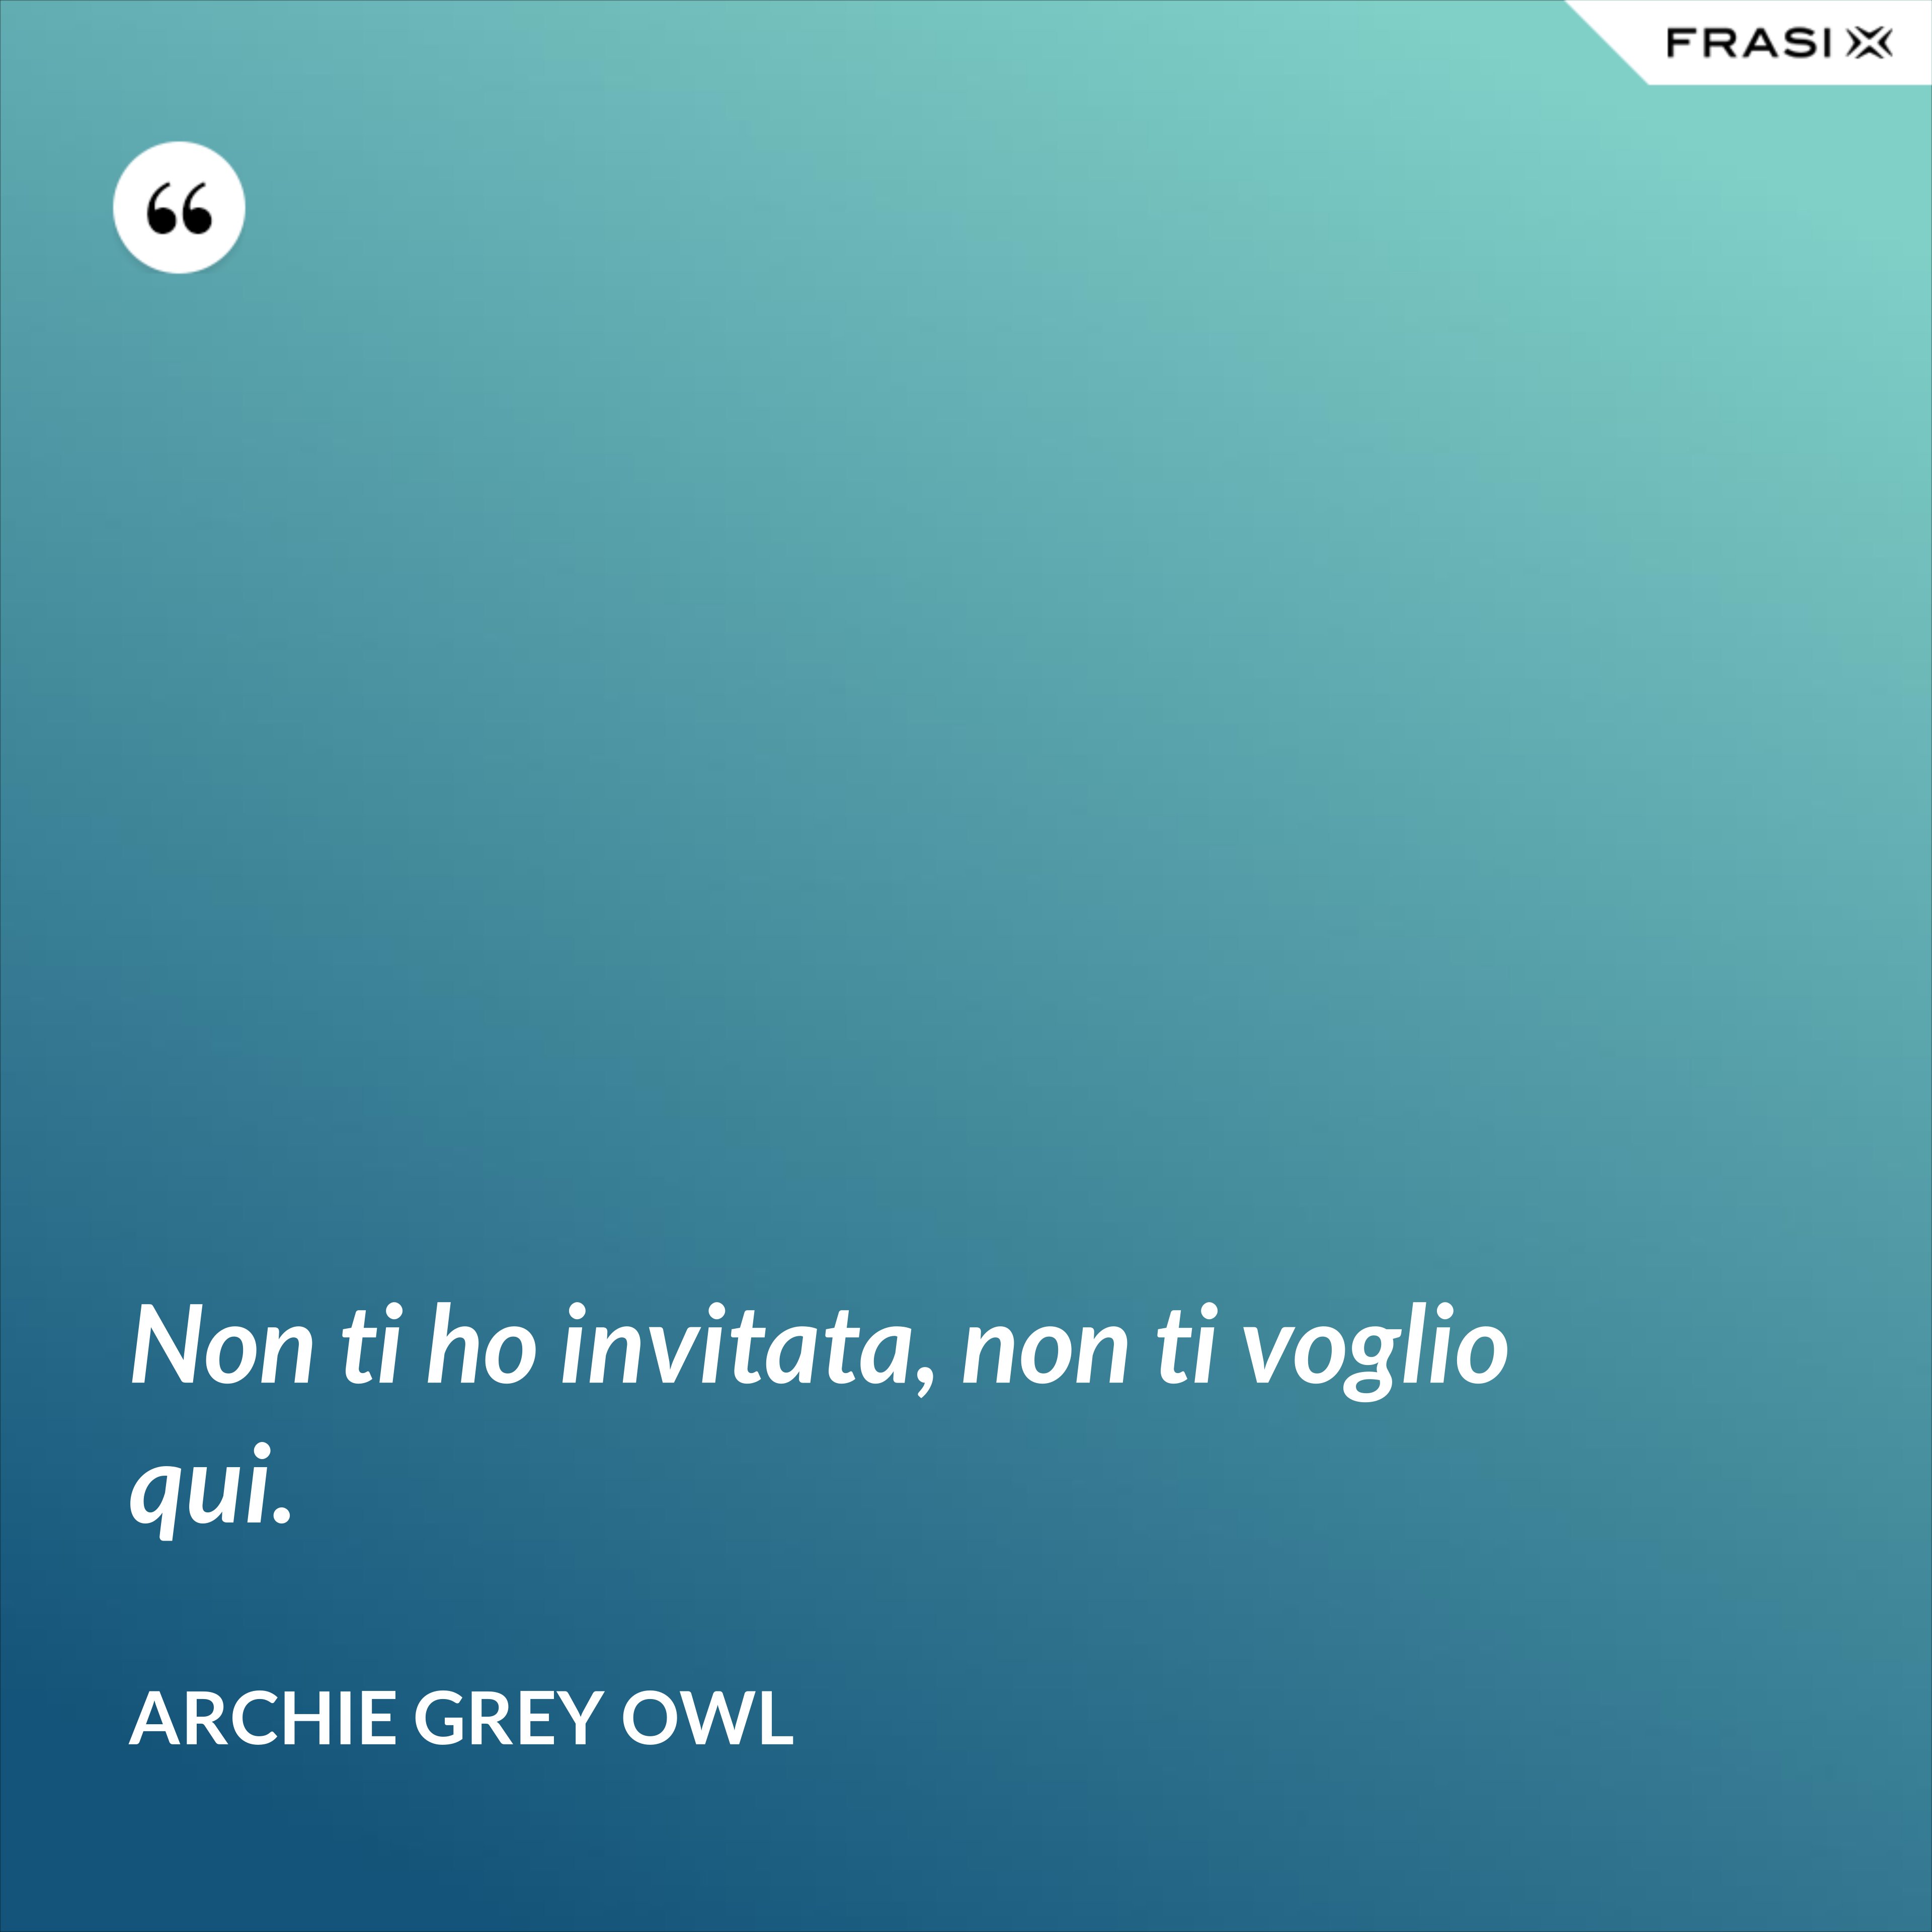 Non ti ho invitata, non ti voglio qui. - Archie Grey Owl